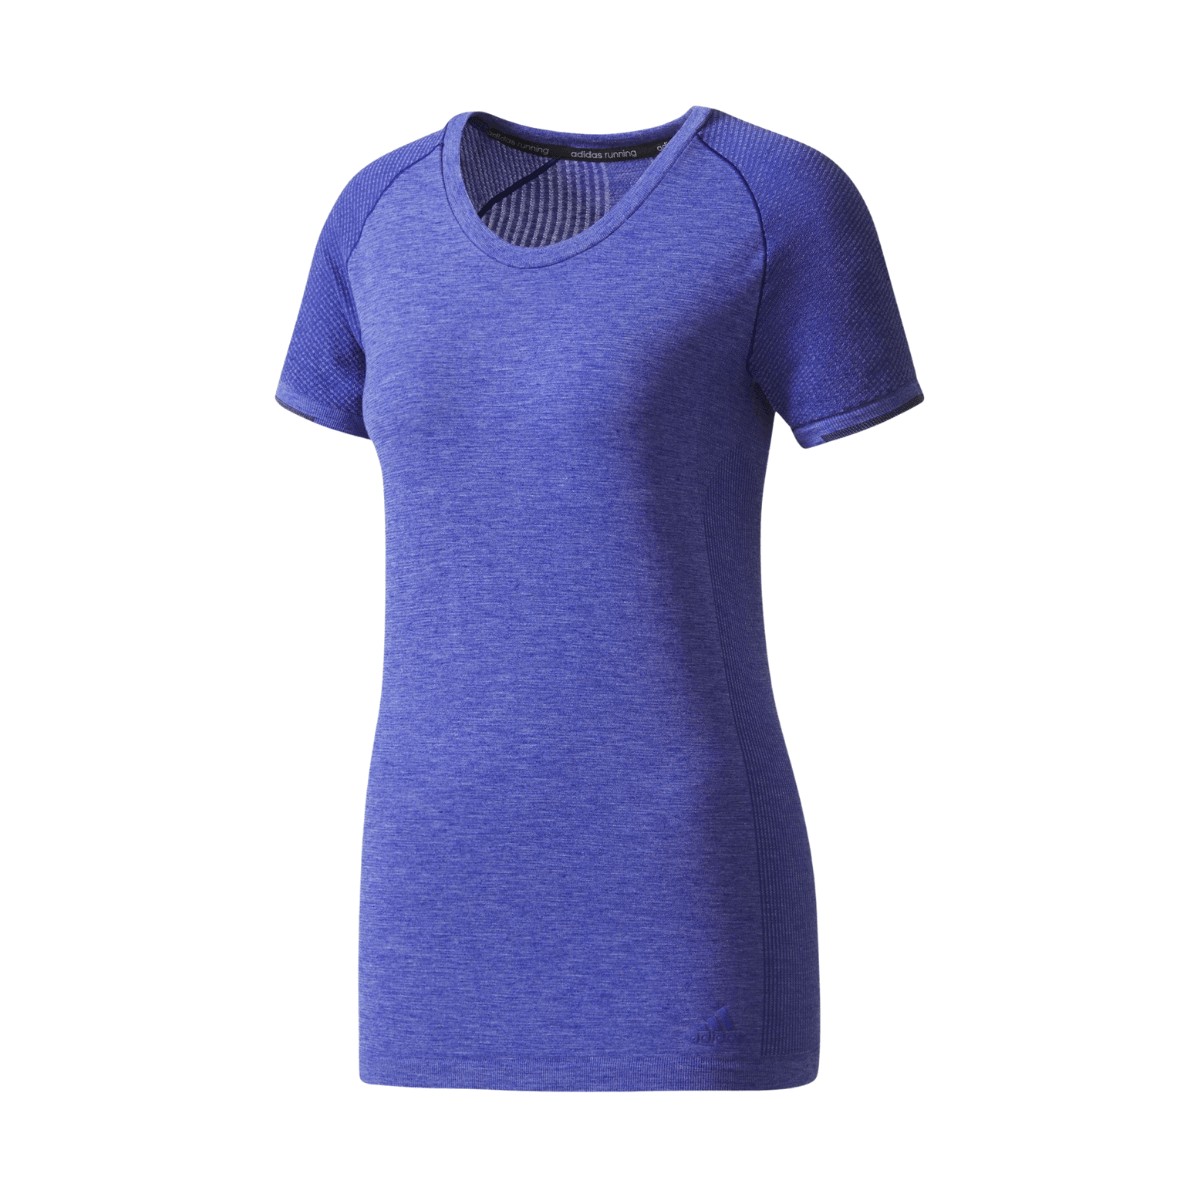 Maglietta da donna Adidas technical primeknit wool blu, taglia xs.